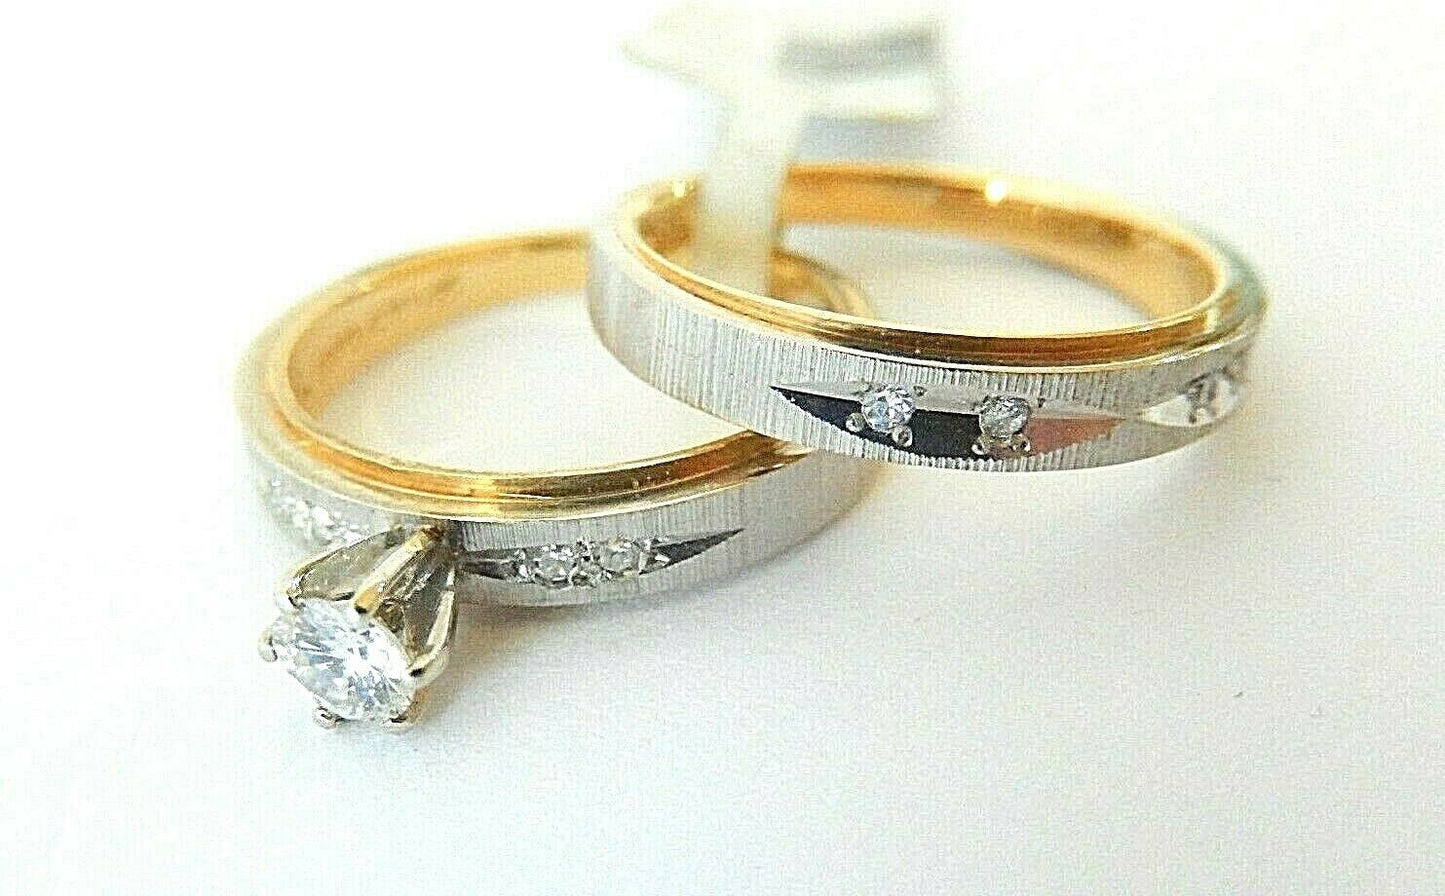 14K Two Tone Gold Diamond Bridal Set Engagement Ring Wedding Band Sz 5.25